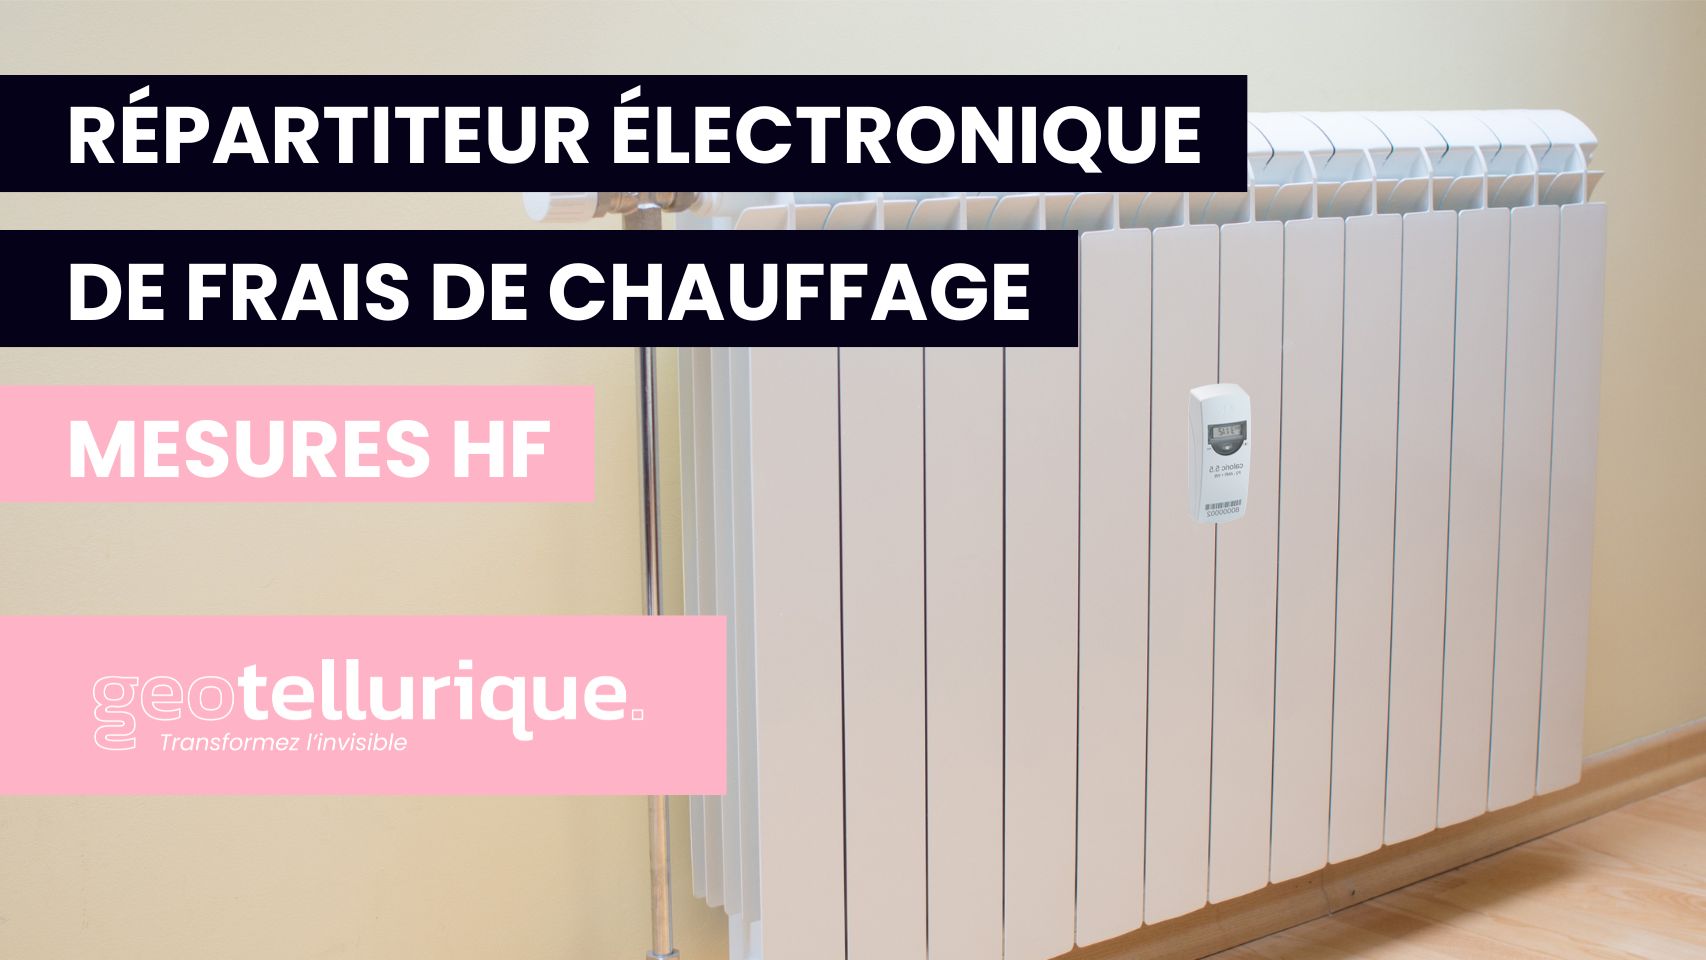 Vidéo - Répartiteur électronique de frais de chauffage - Mesures HF - Geotellurique.fr